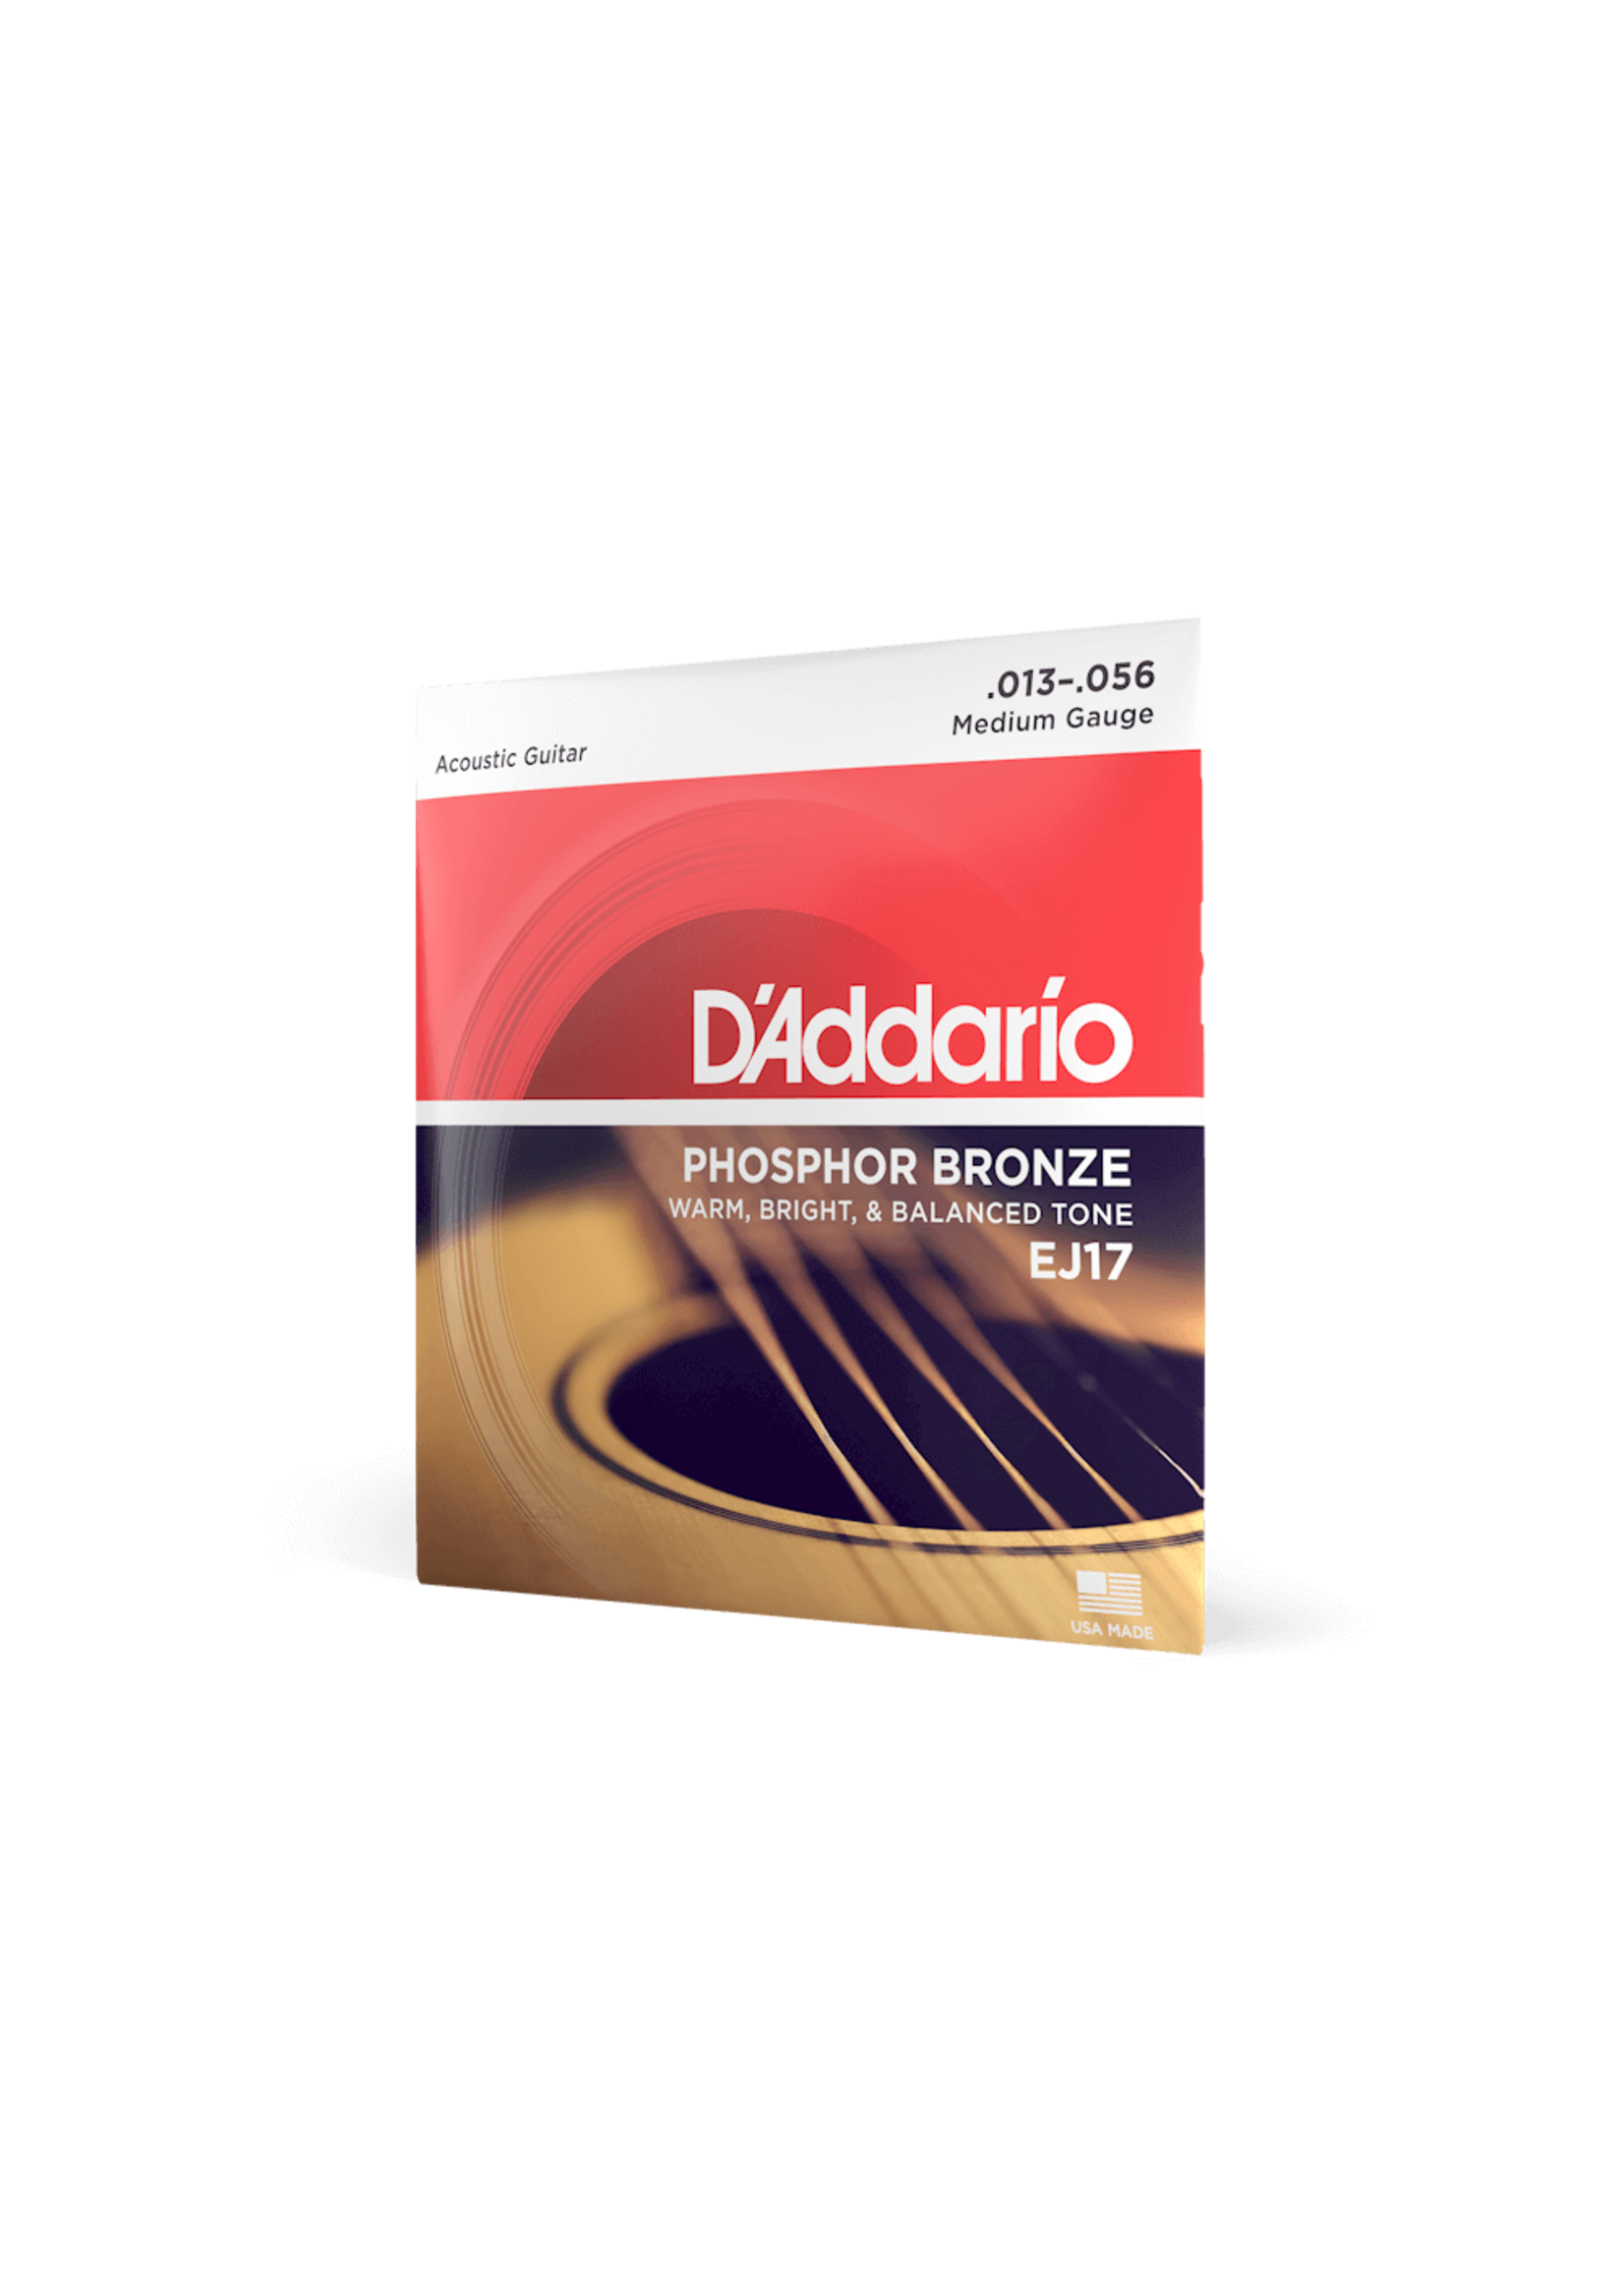 D'Addario D'Addario EJ17 Phosphor Bronze Acoustic Guitar Strings, Medium, 13-56